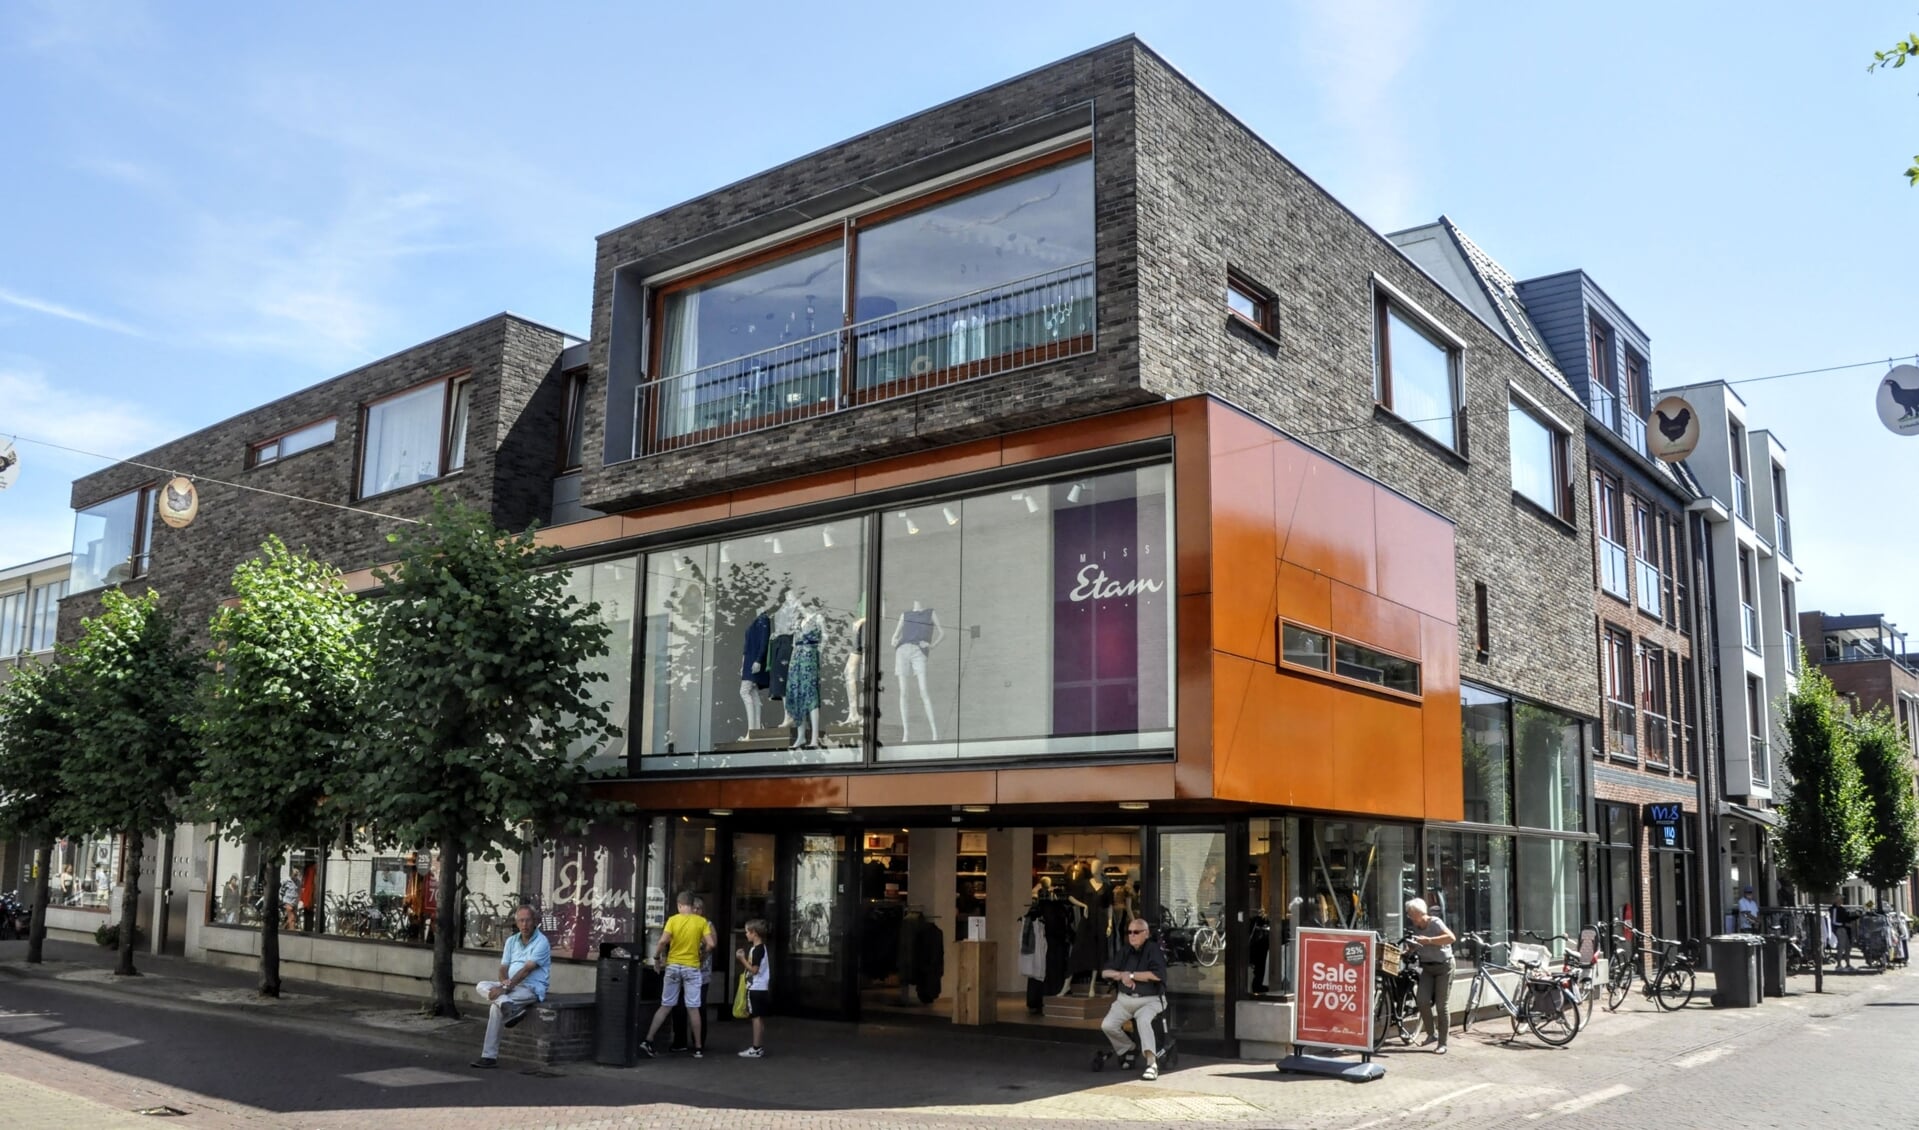 De winkel van Miss Etam in Barneveld staat op een prominente locatie.